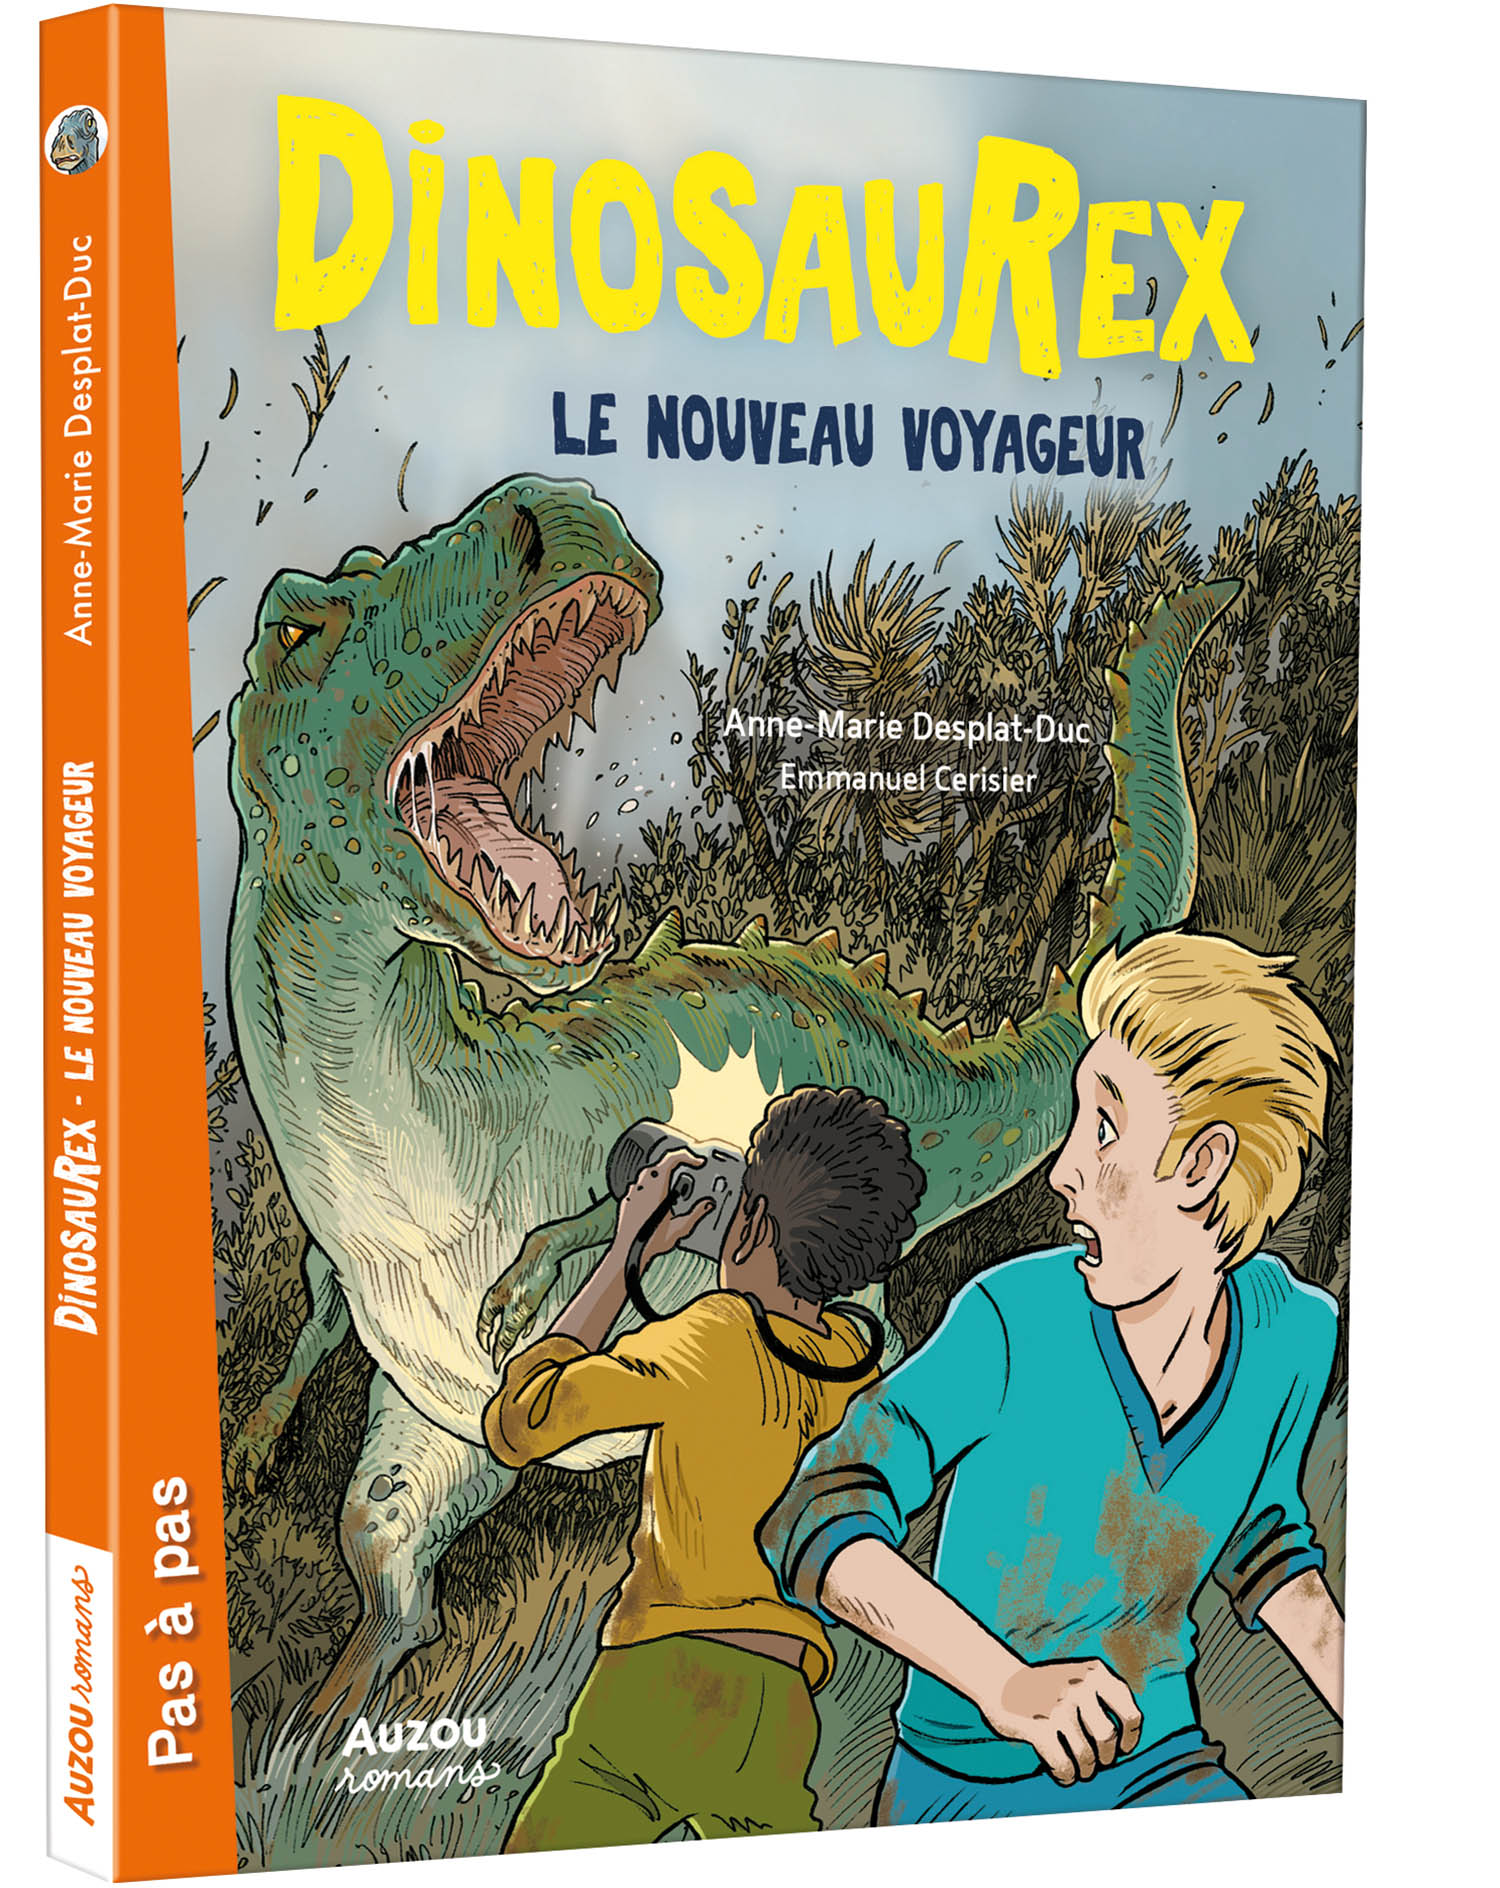 Dinosaurex T8 - L'attaque Du T-Rex